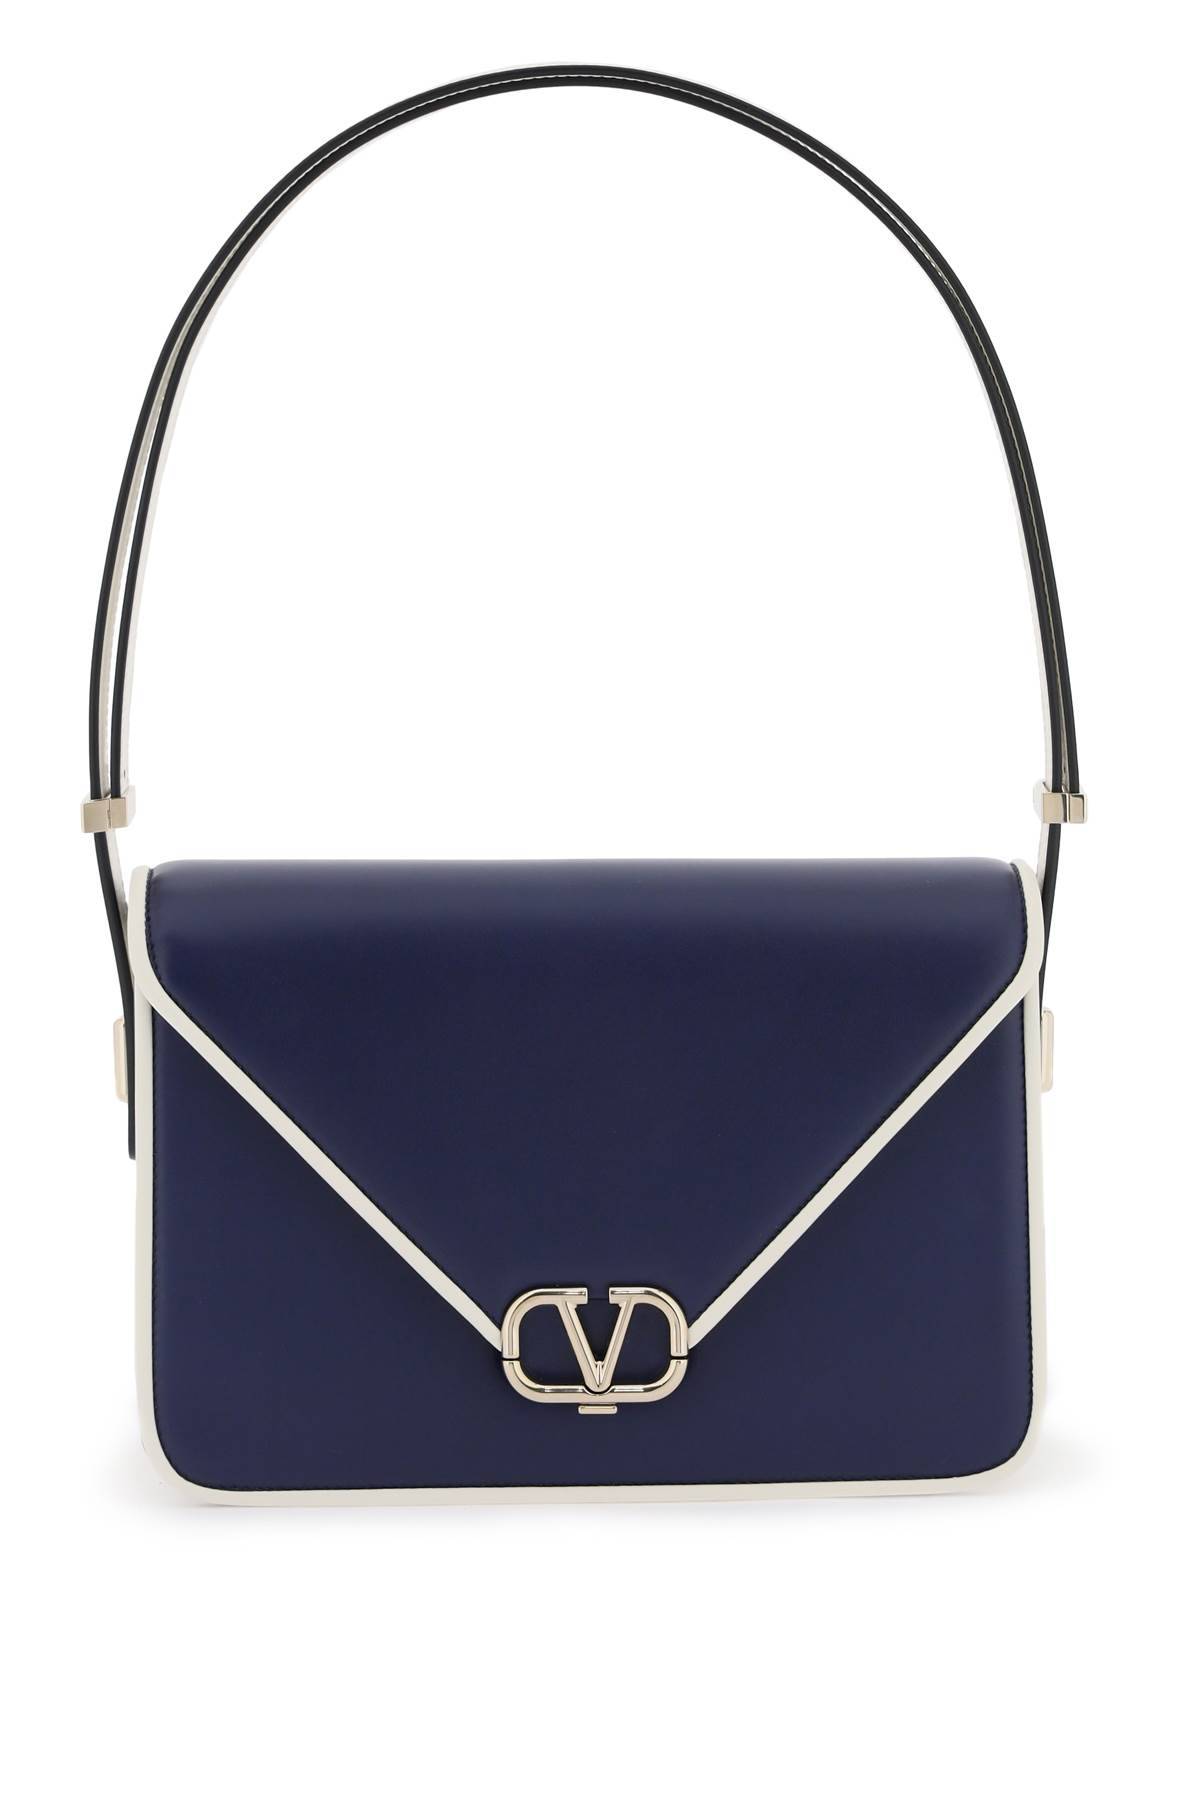 Valentino Garavani Blue Letter Leather Shoulder Bag